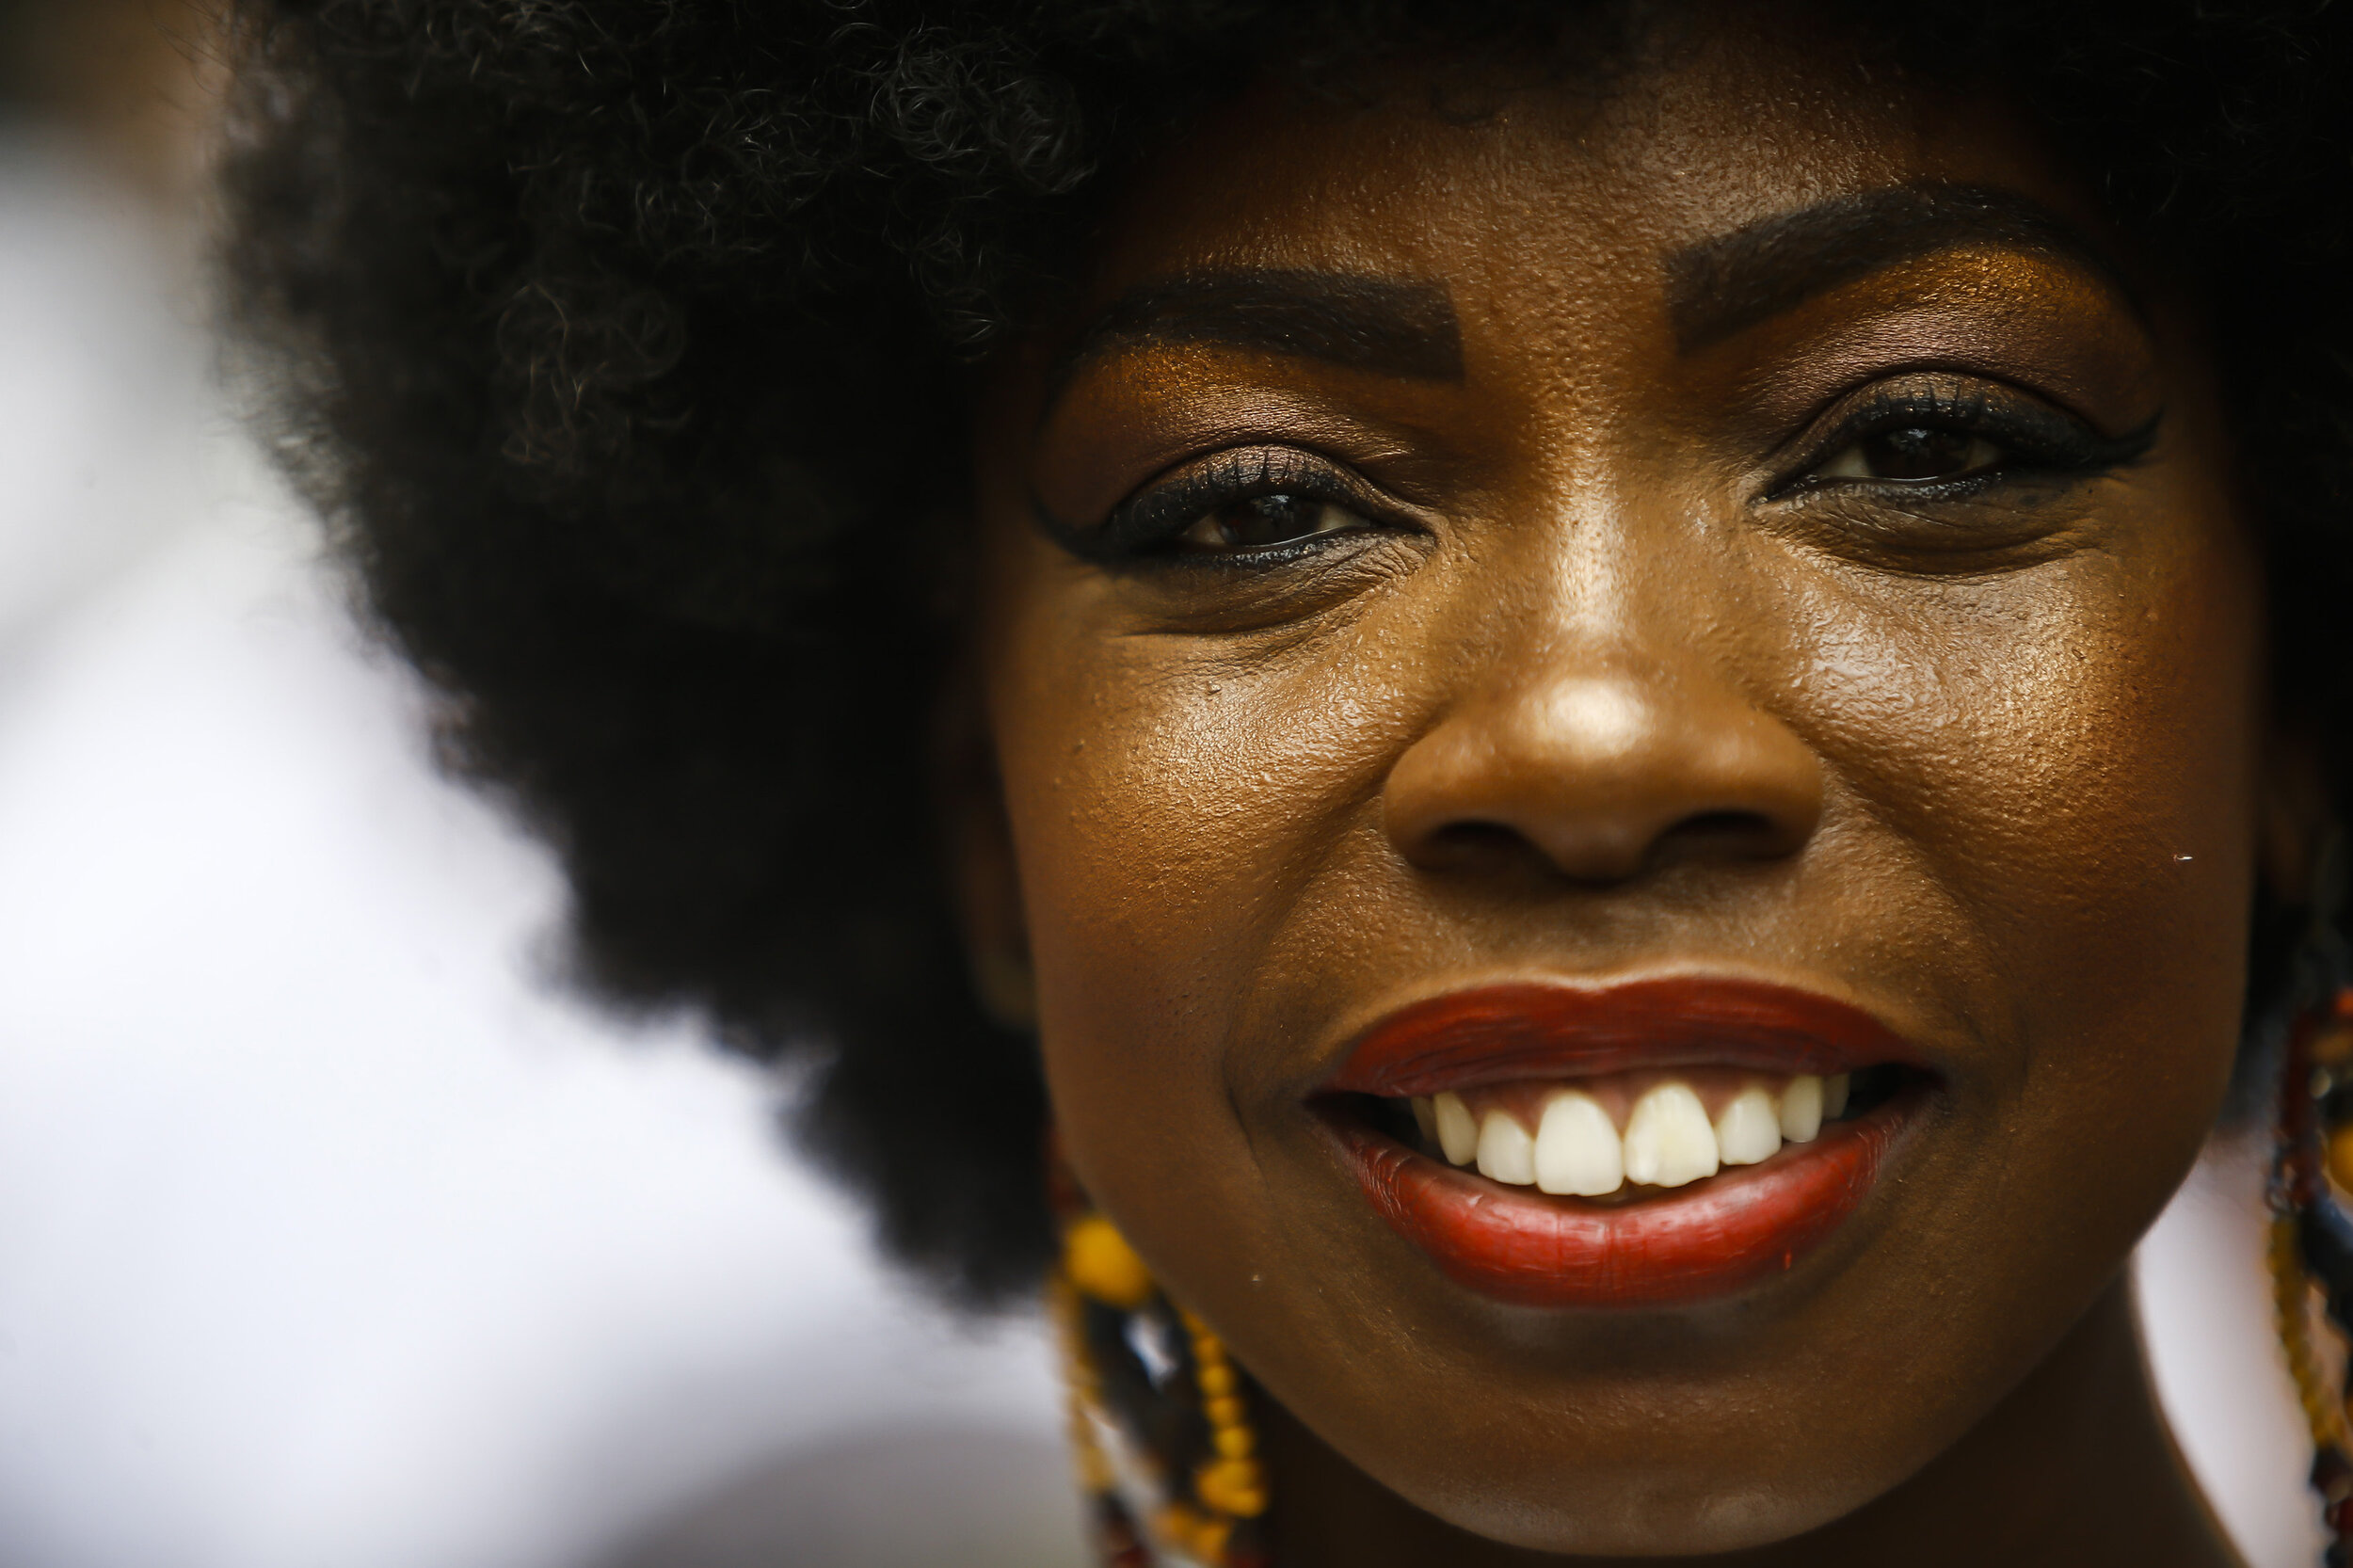  Egili Oliveira smiles for a portrait as she attends a ceremony marking Black Consciousness Day in the Santa Marta favela of Rio de Janeiro, Brazil, Friday, Nov. 20, 2020. (AP Photo/Bruna Prado) 